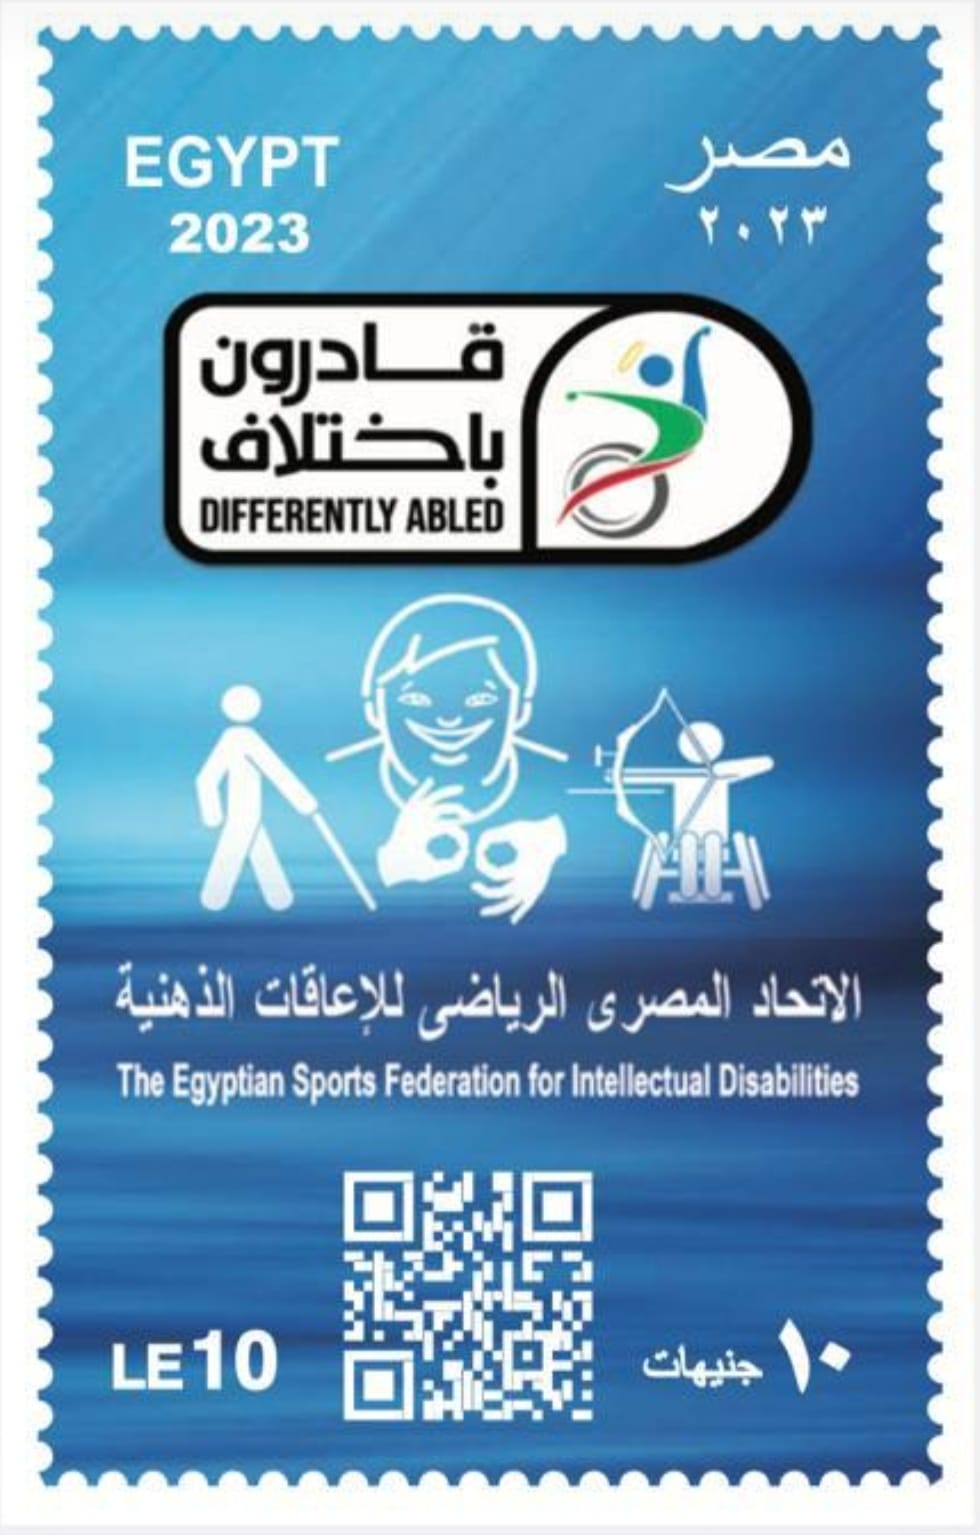 الاتحاد المصري للعاقات الذهنيةالاتحاد المصري للعاقات الذهنية